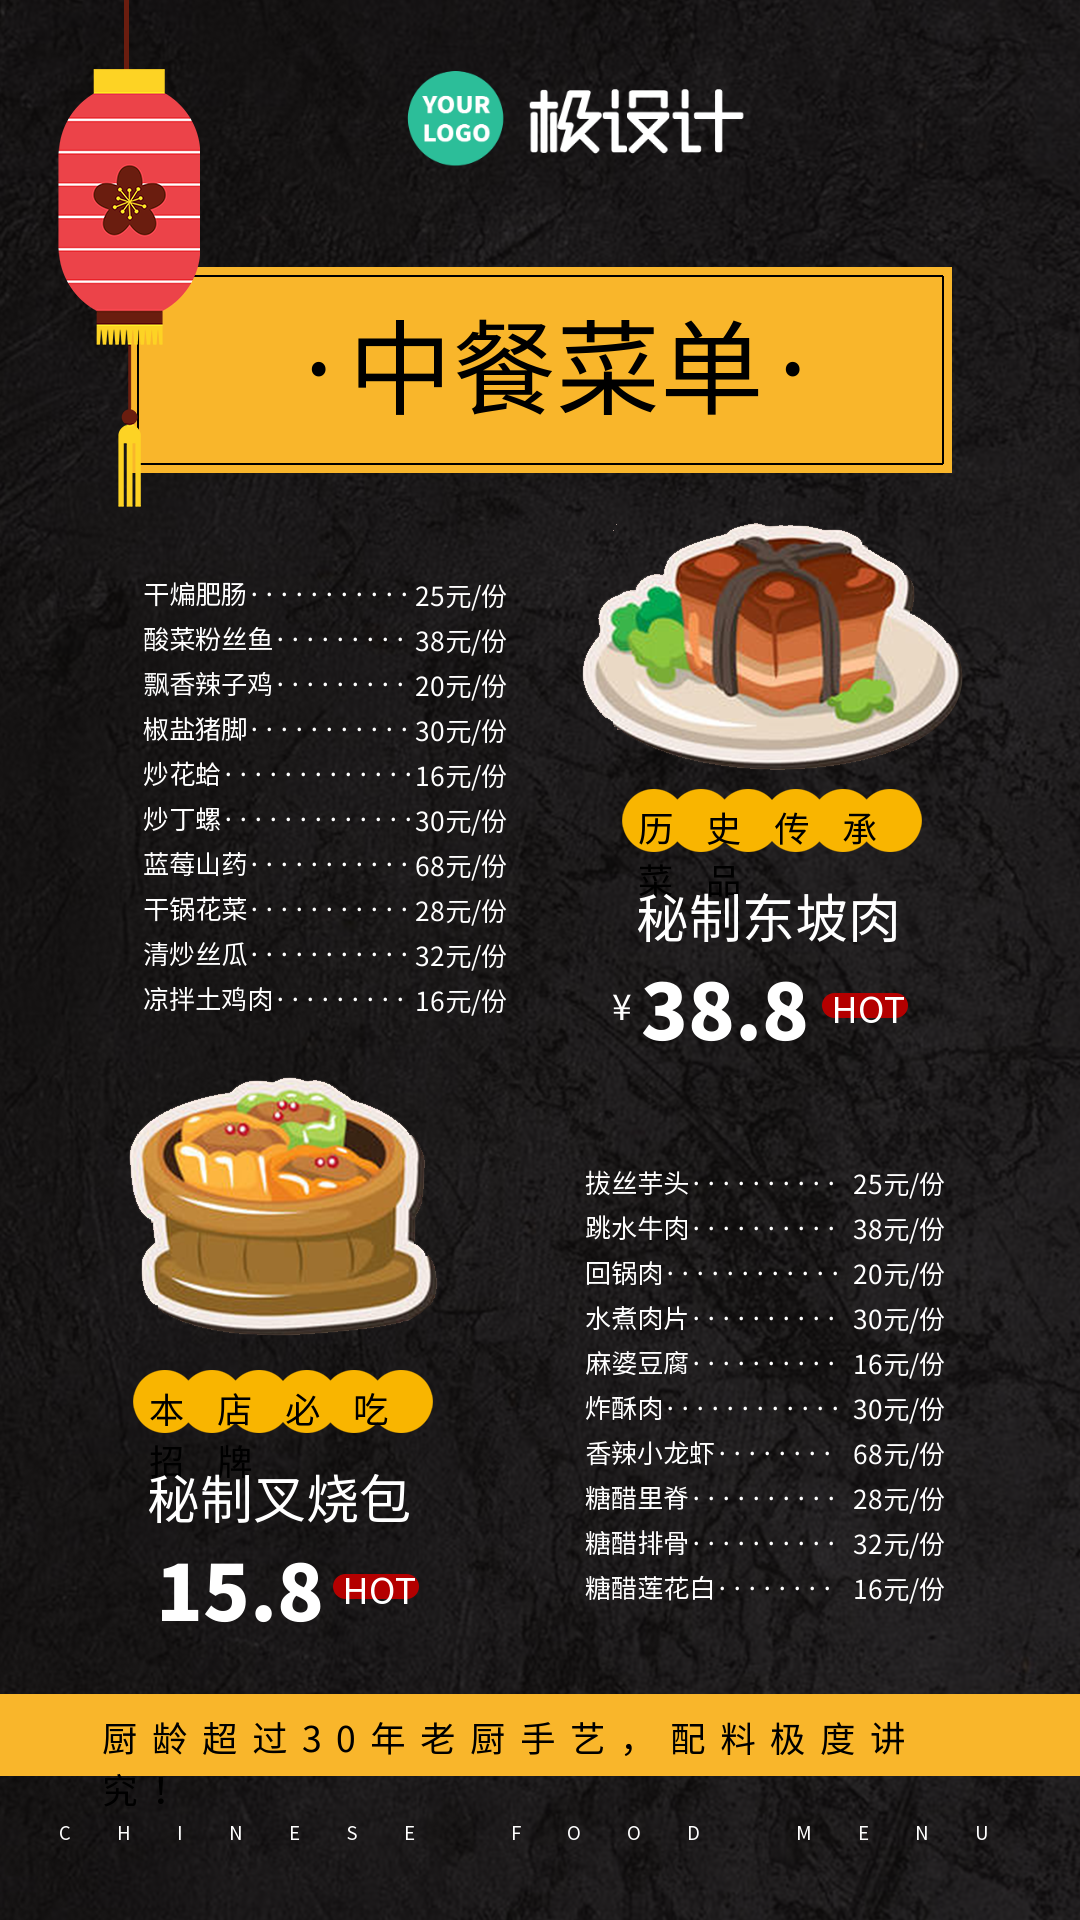 中餐菜单价格表-竖